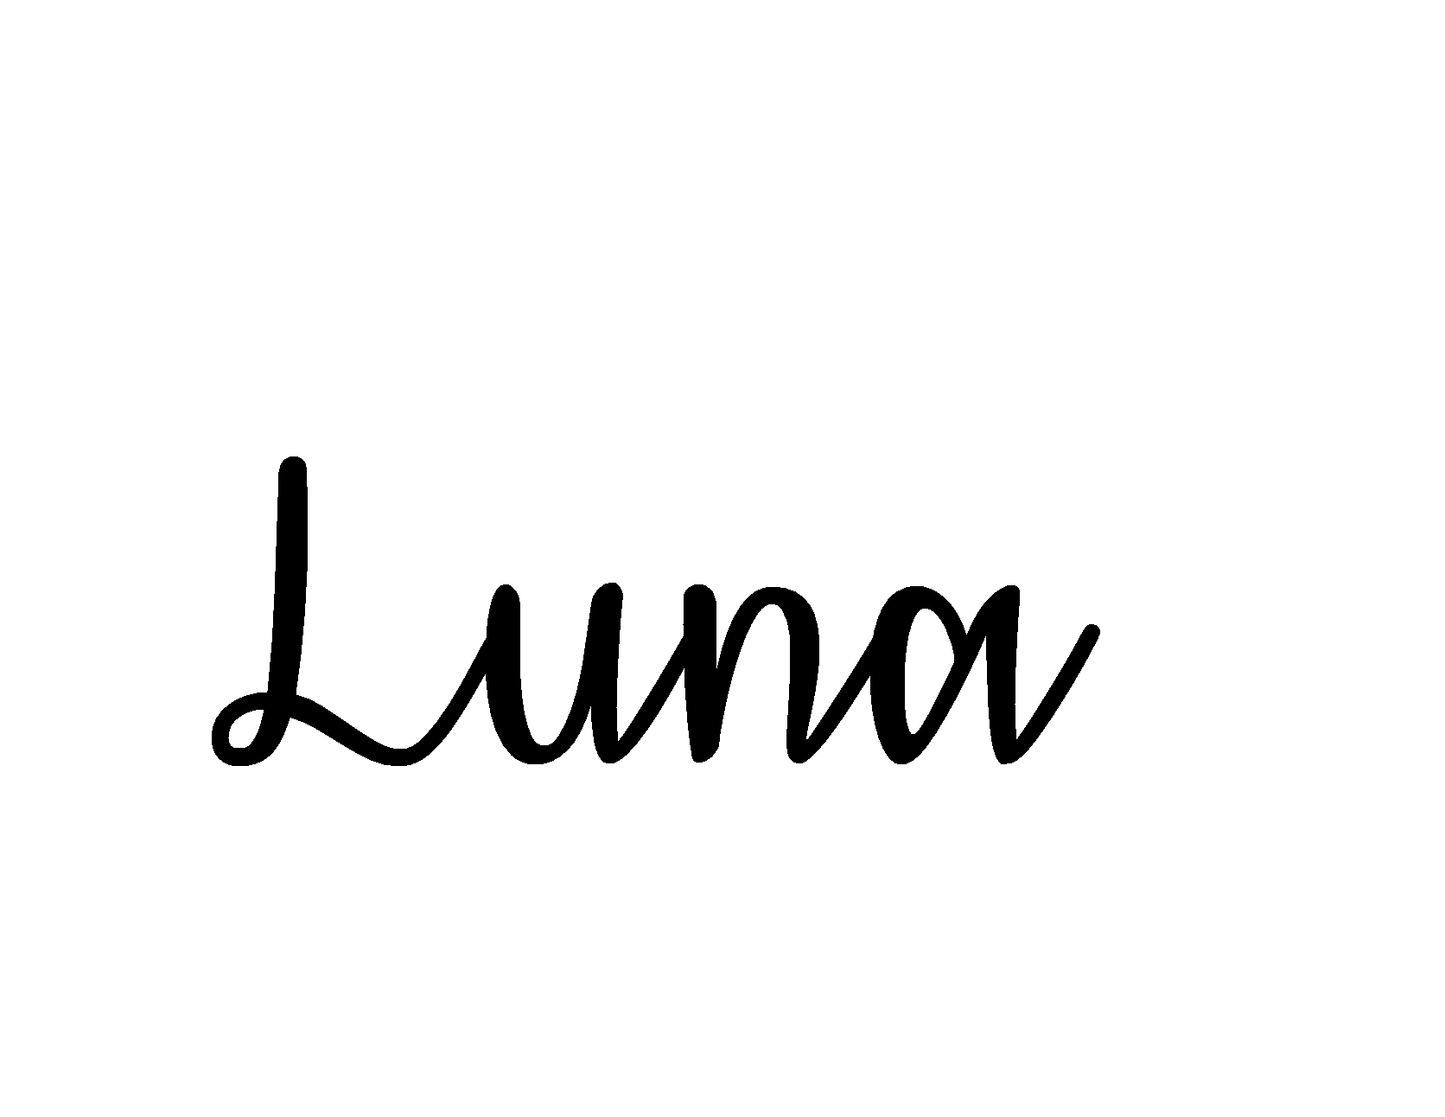 Naamsticker kinderstoel lettertype Luna